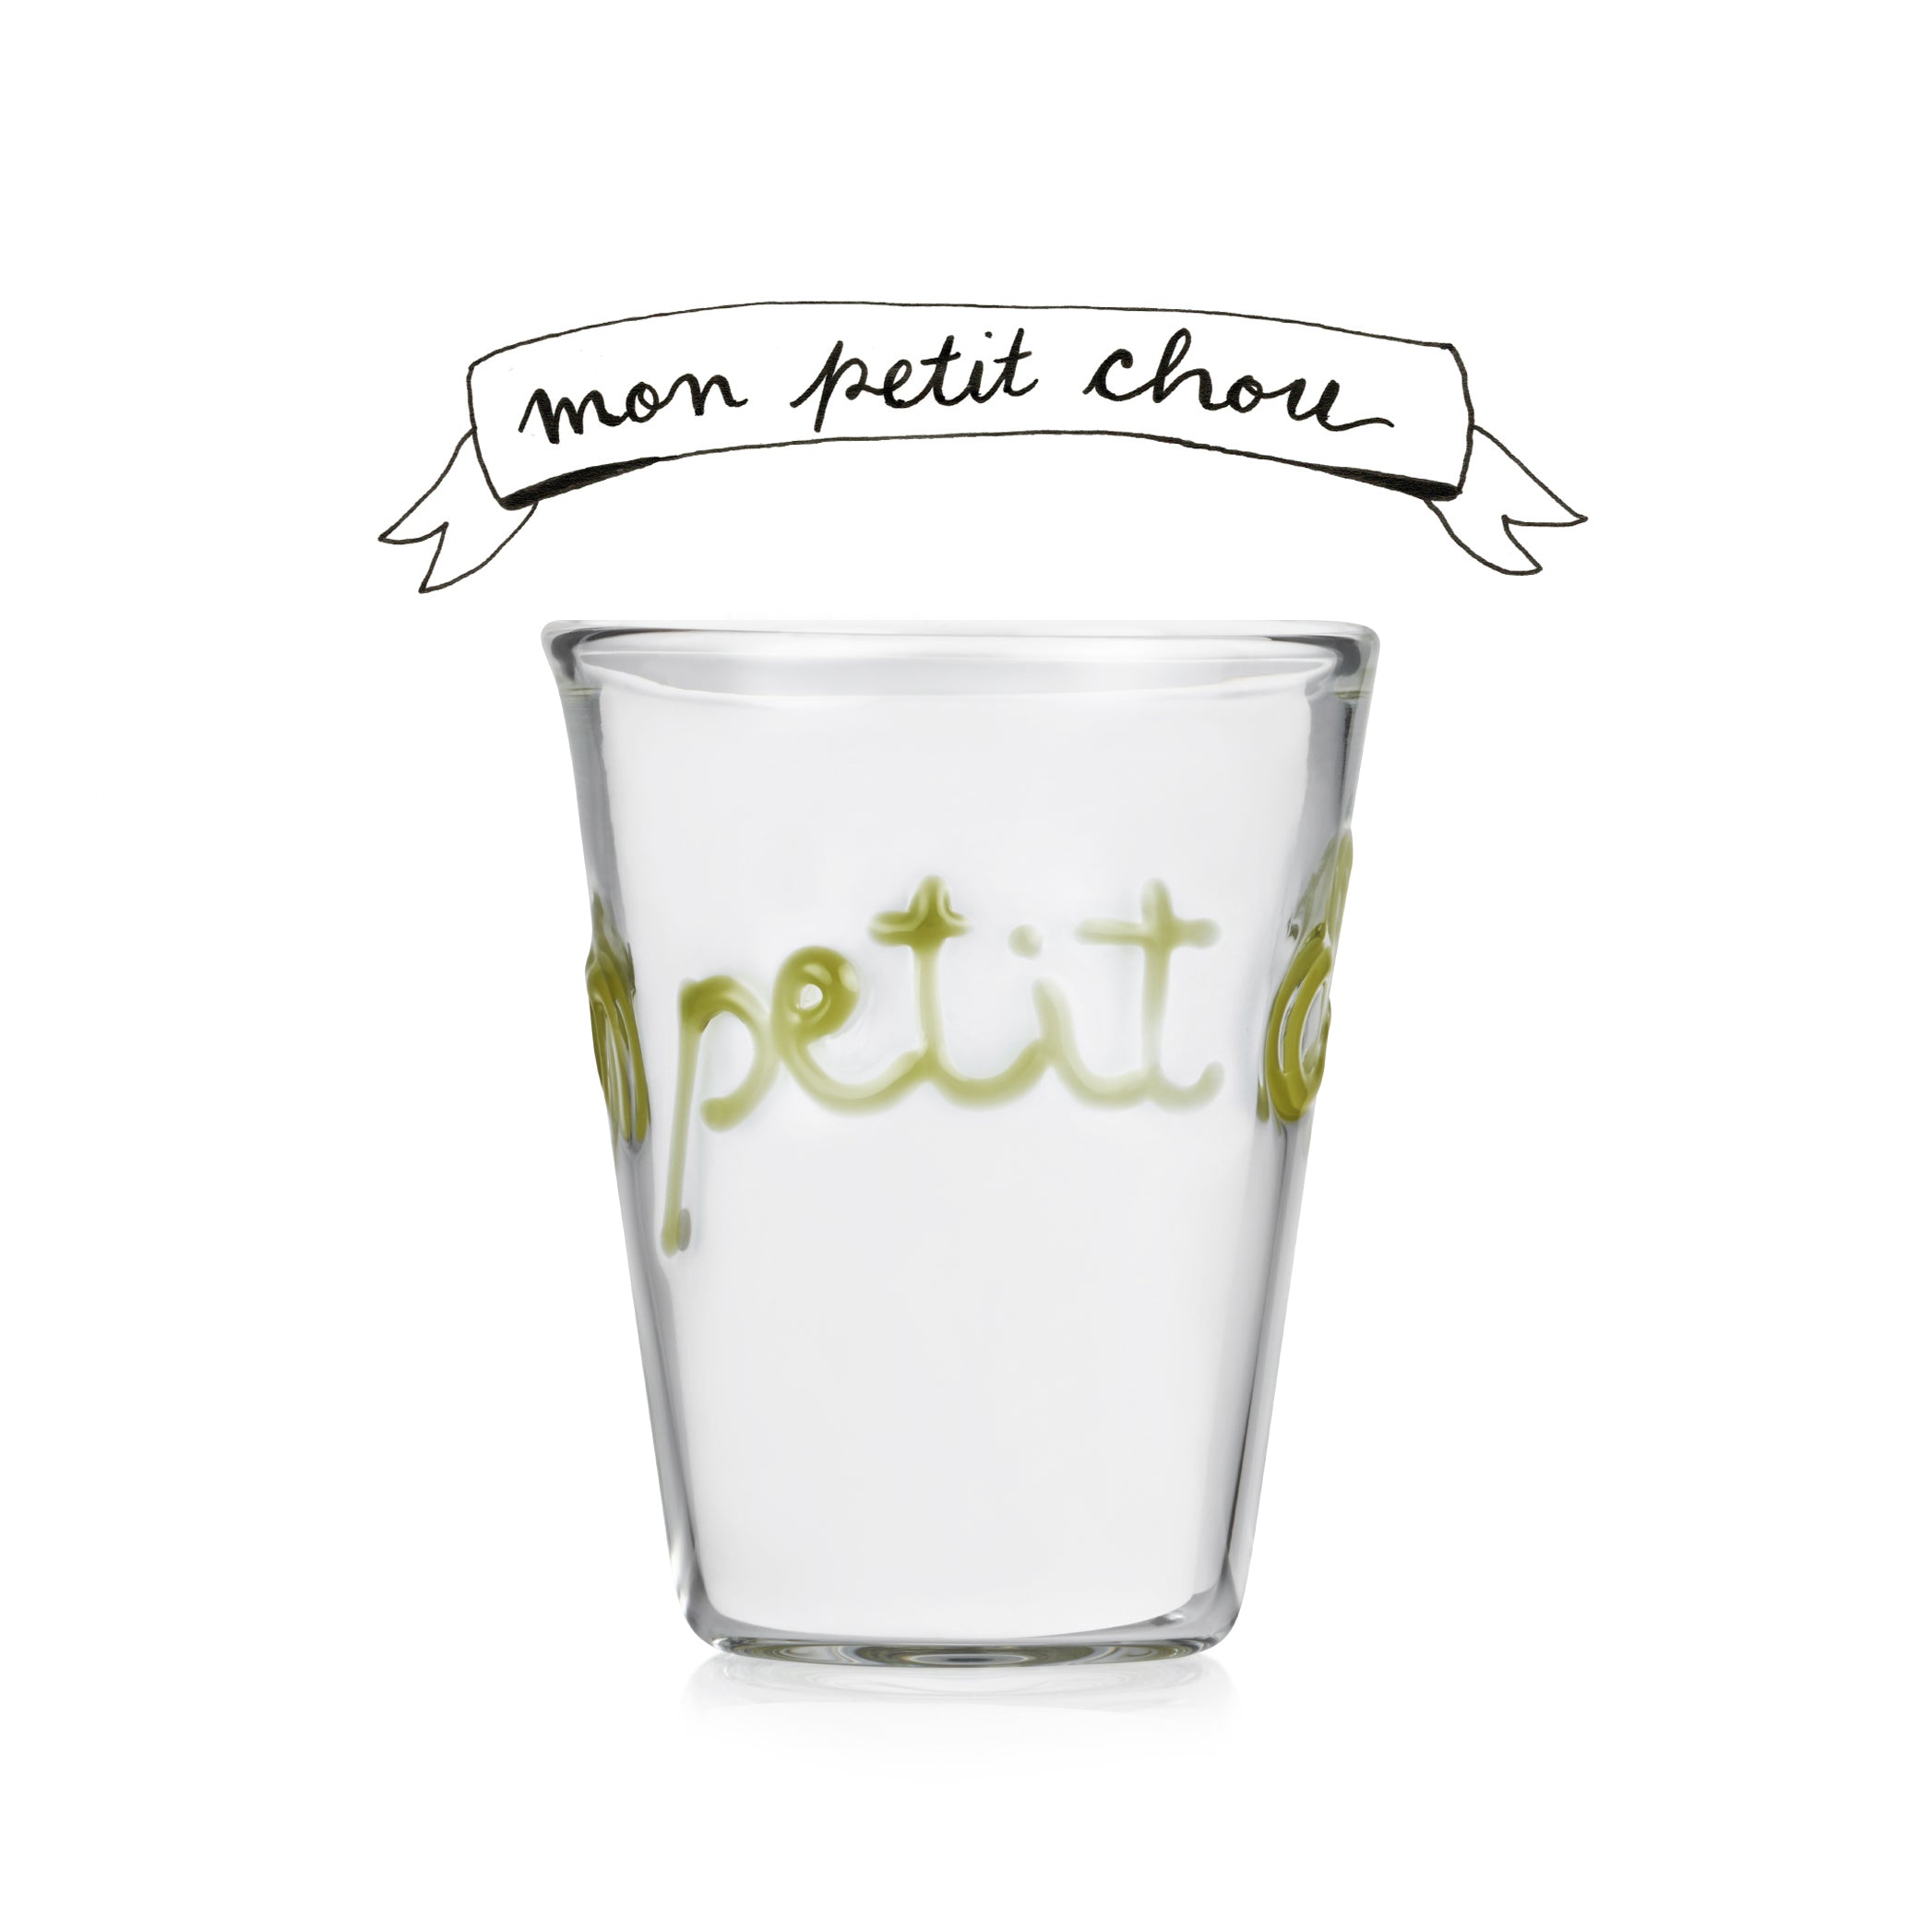 Handblown Glass "Mon Petit Chou" (My Sweetheart) Tumbler